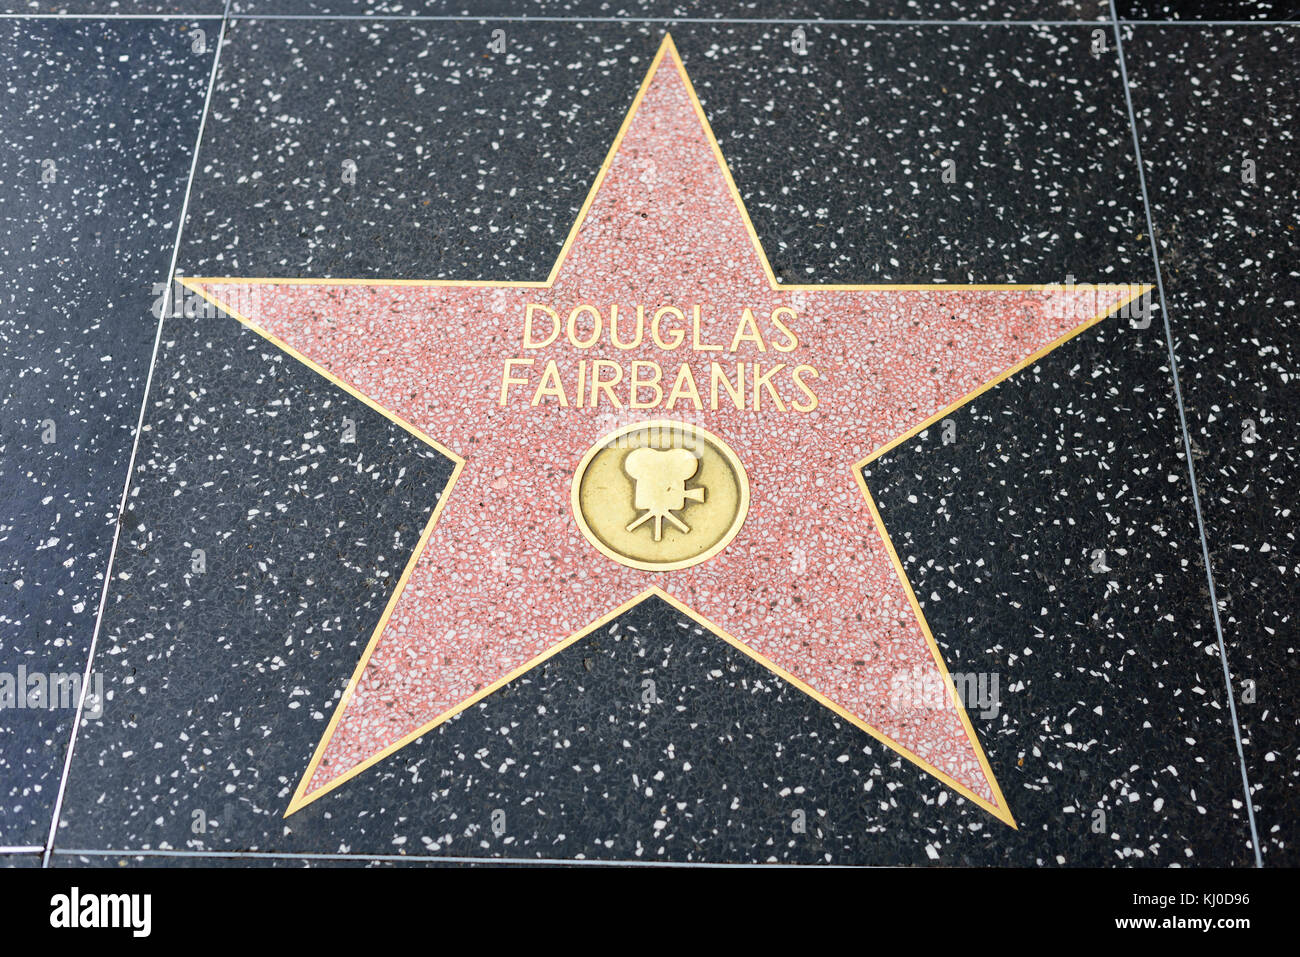 HOLLYWOOD, CA - DICEMBRE 06: Douglas Fairbanks stella sulla Hollywood Walk of Fame a Hollywood, California il 6 dicembre 2016. Foto Stock